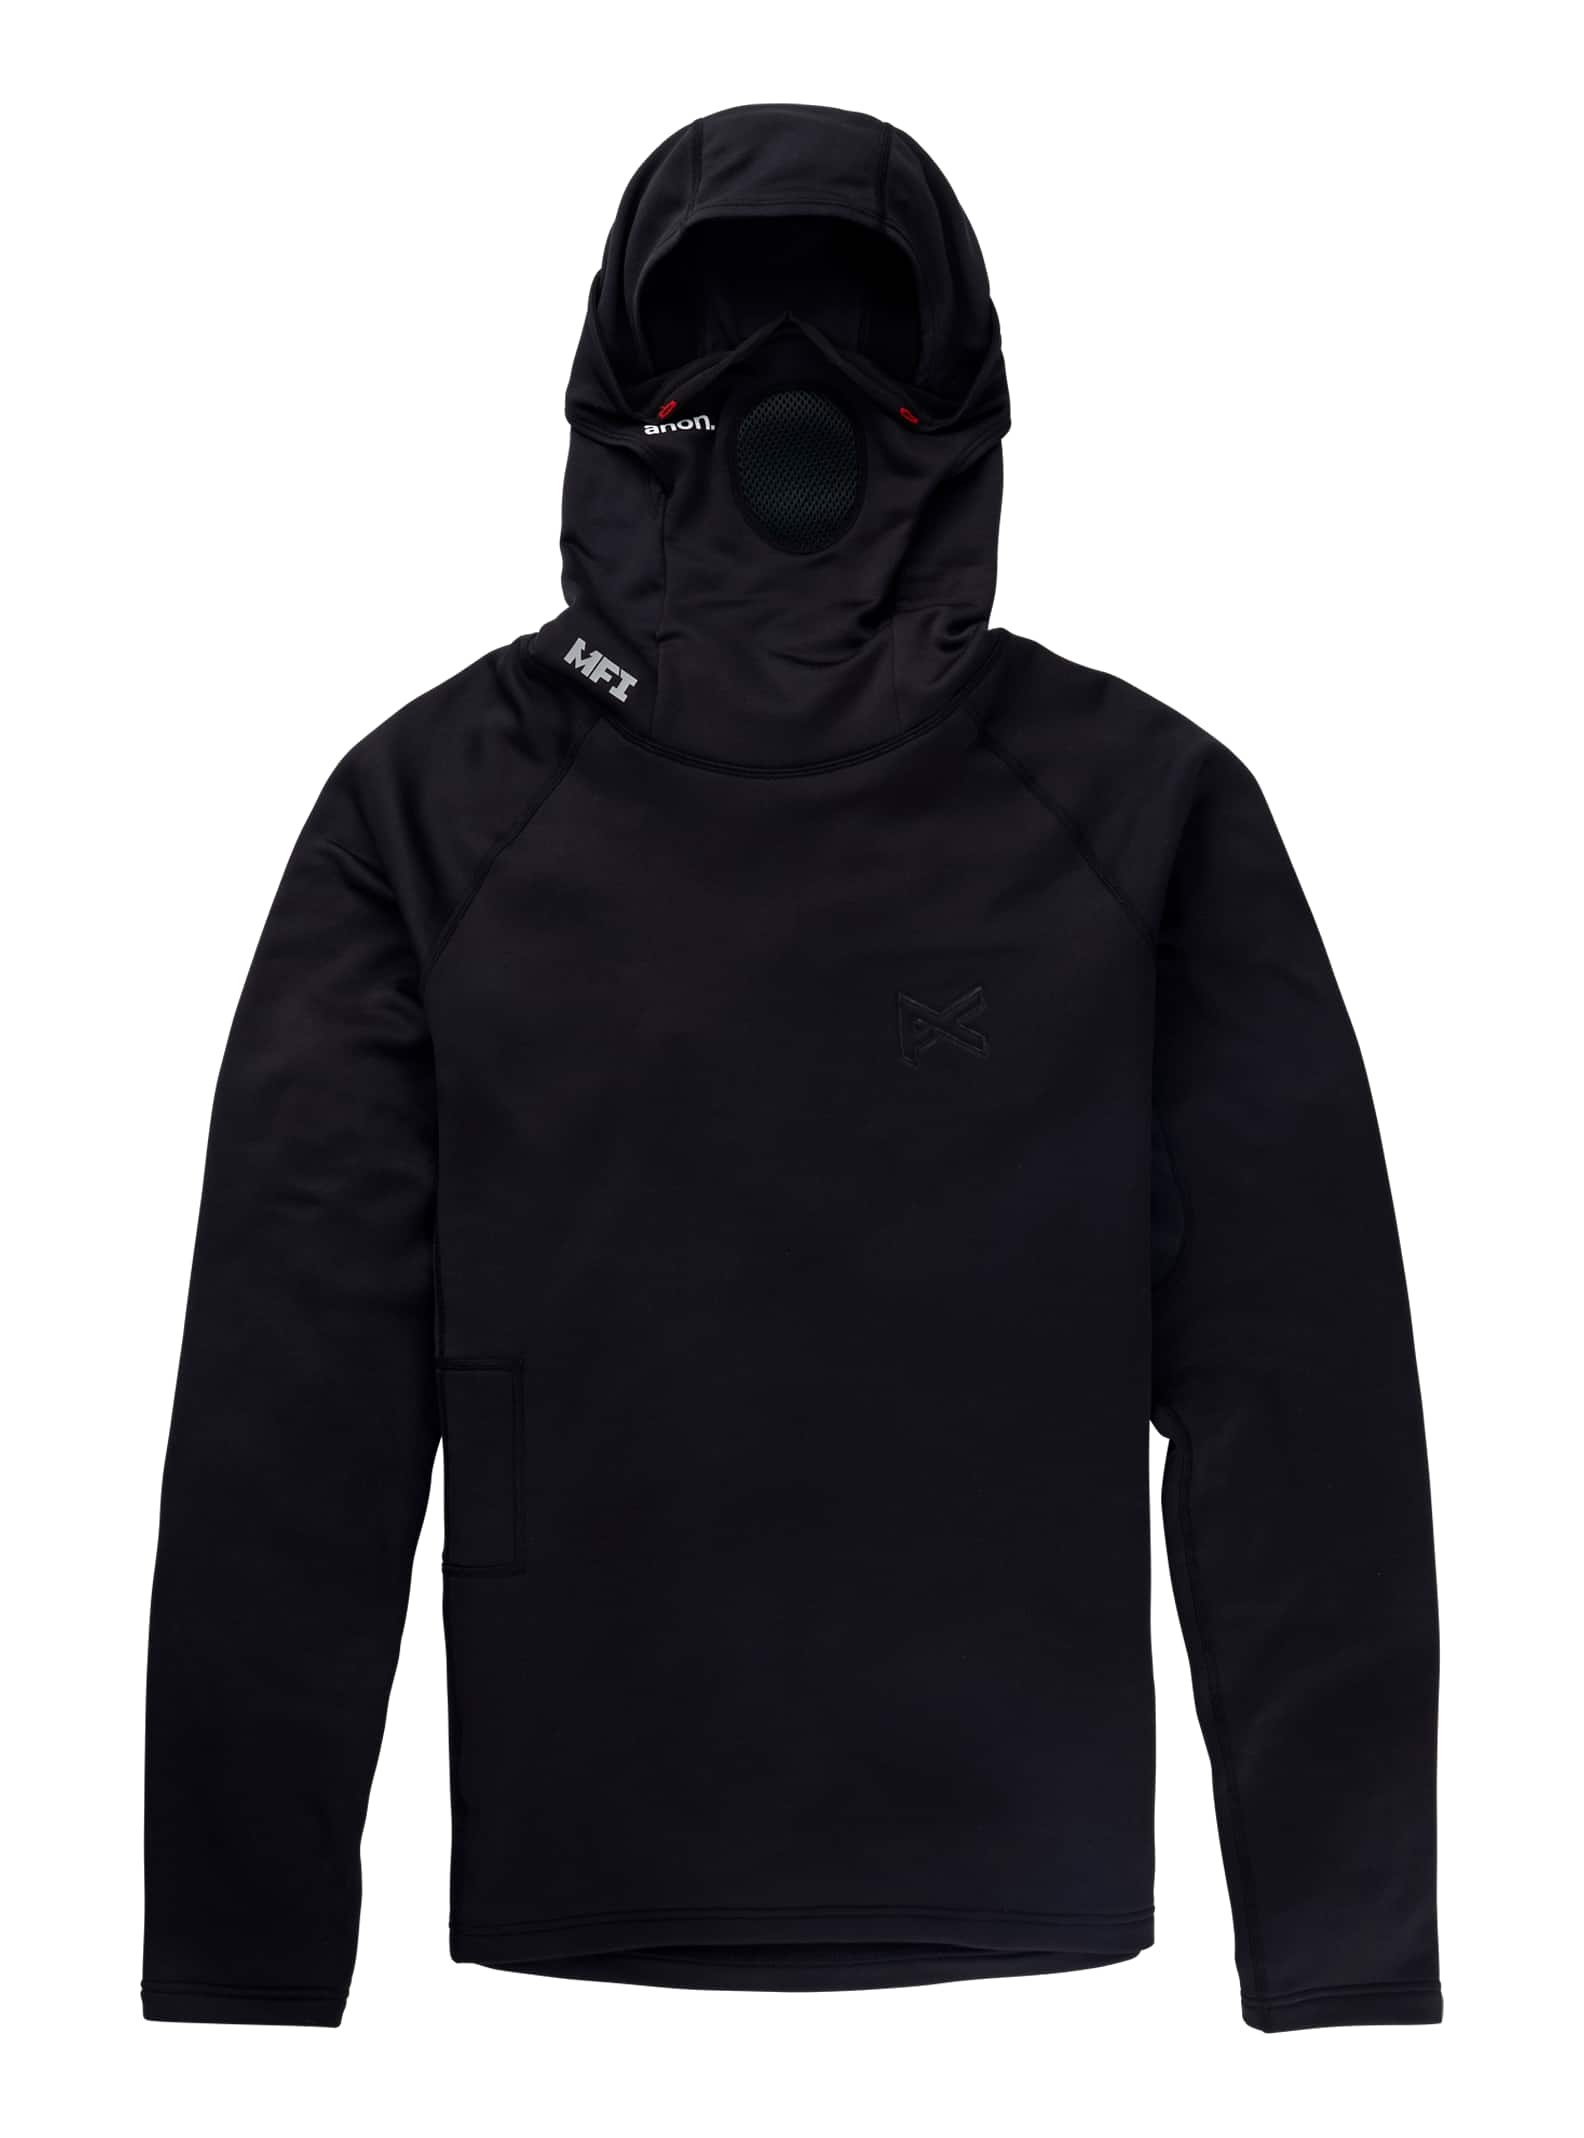 Anon - T-shirt à manches longues avec cagoule passe-montagne MFI® Power Dry®, Black, M